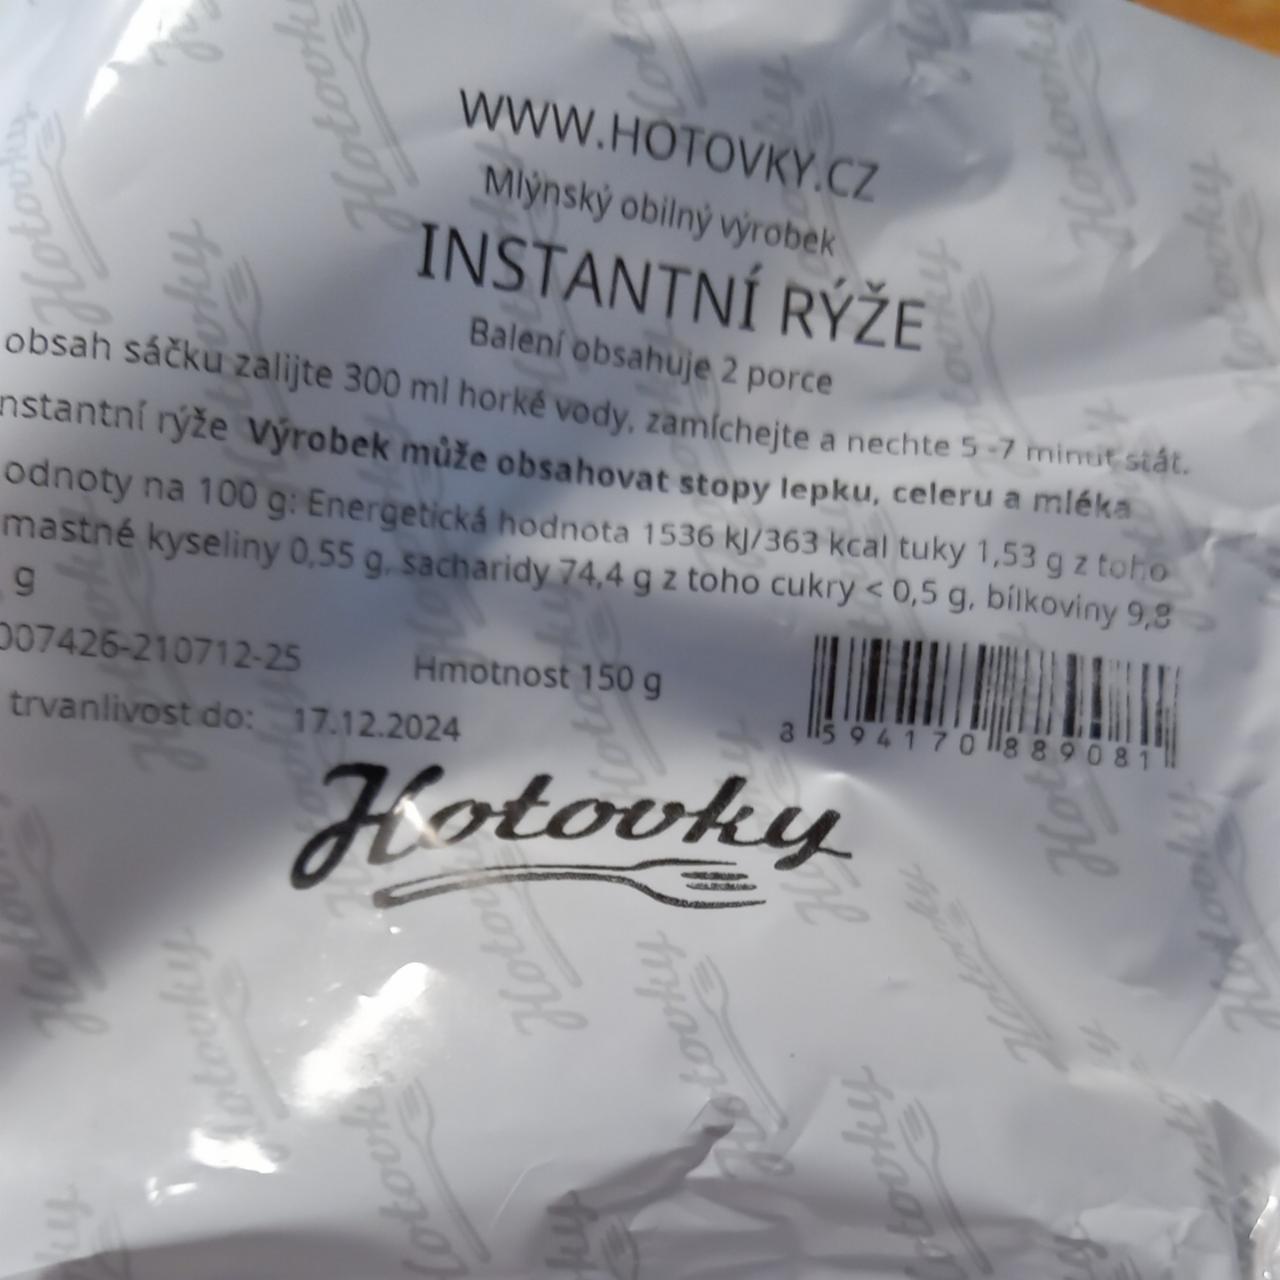 Fotografie - Instantní rýže Hotovky.cz